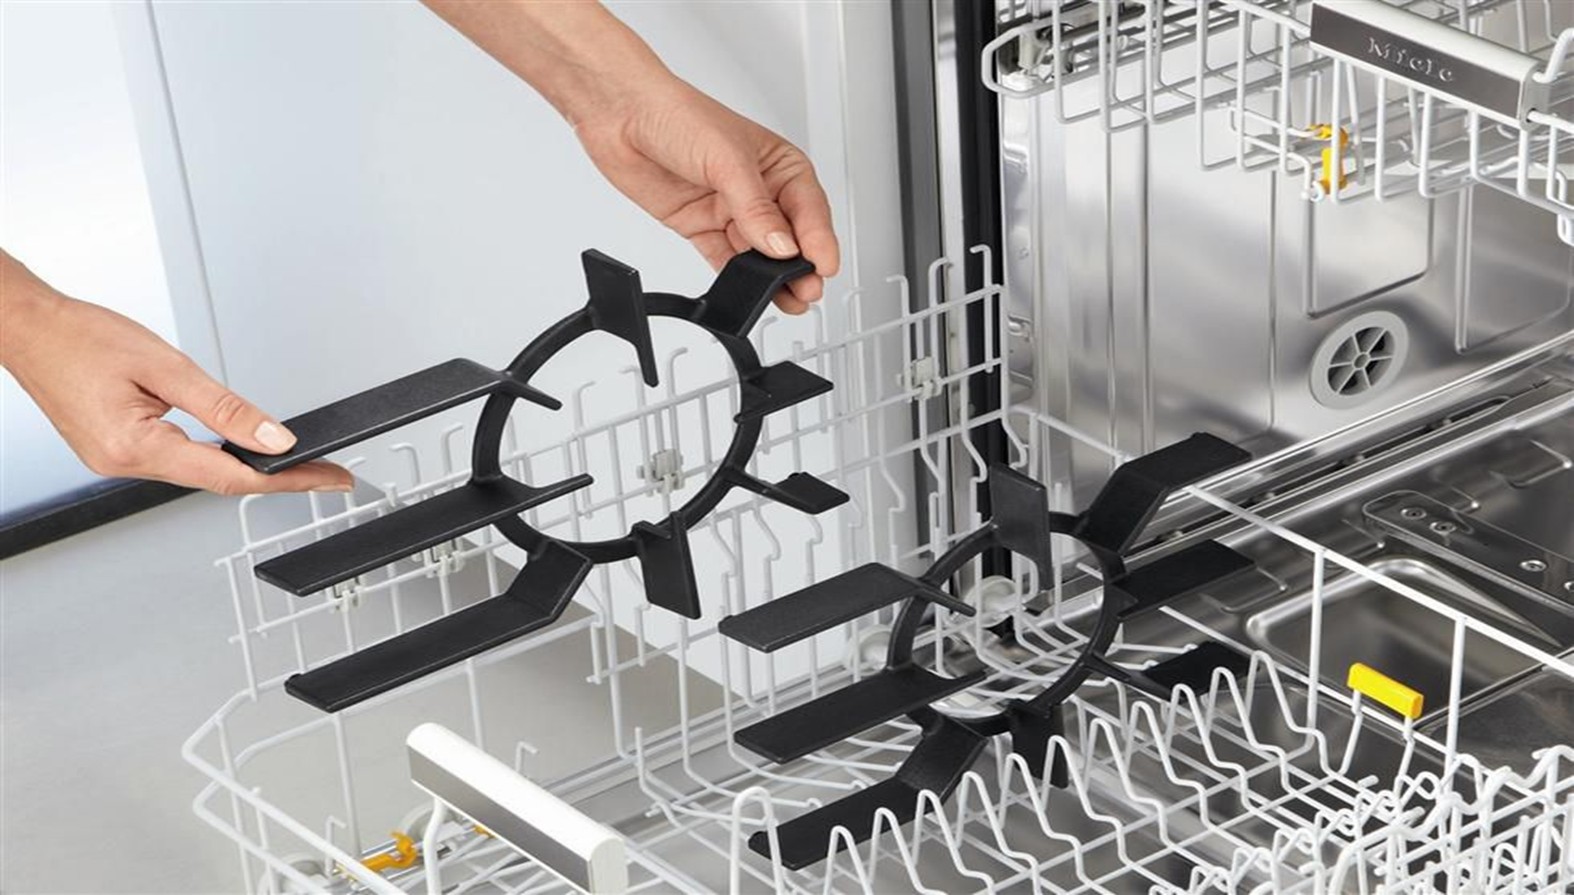 Керамику можно мыть в посудомоечной машине – правда или нет